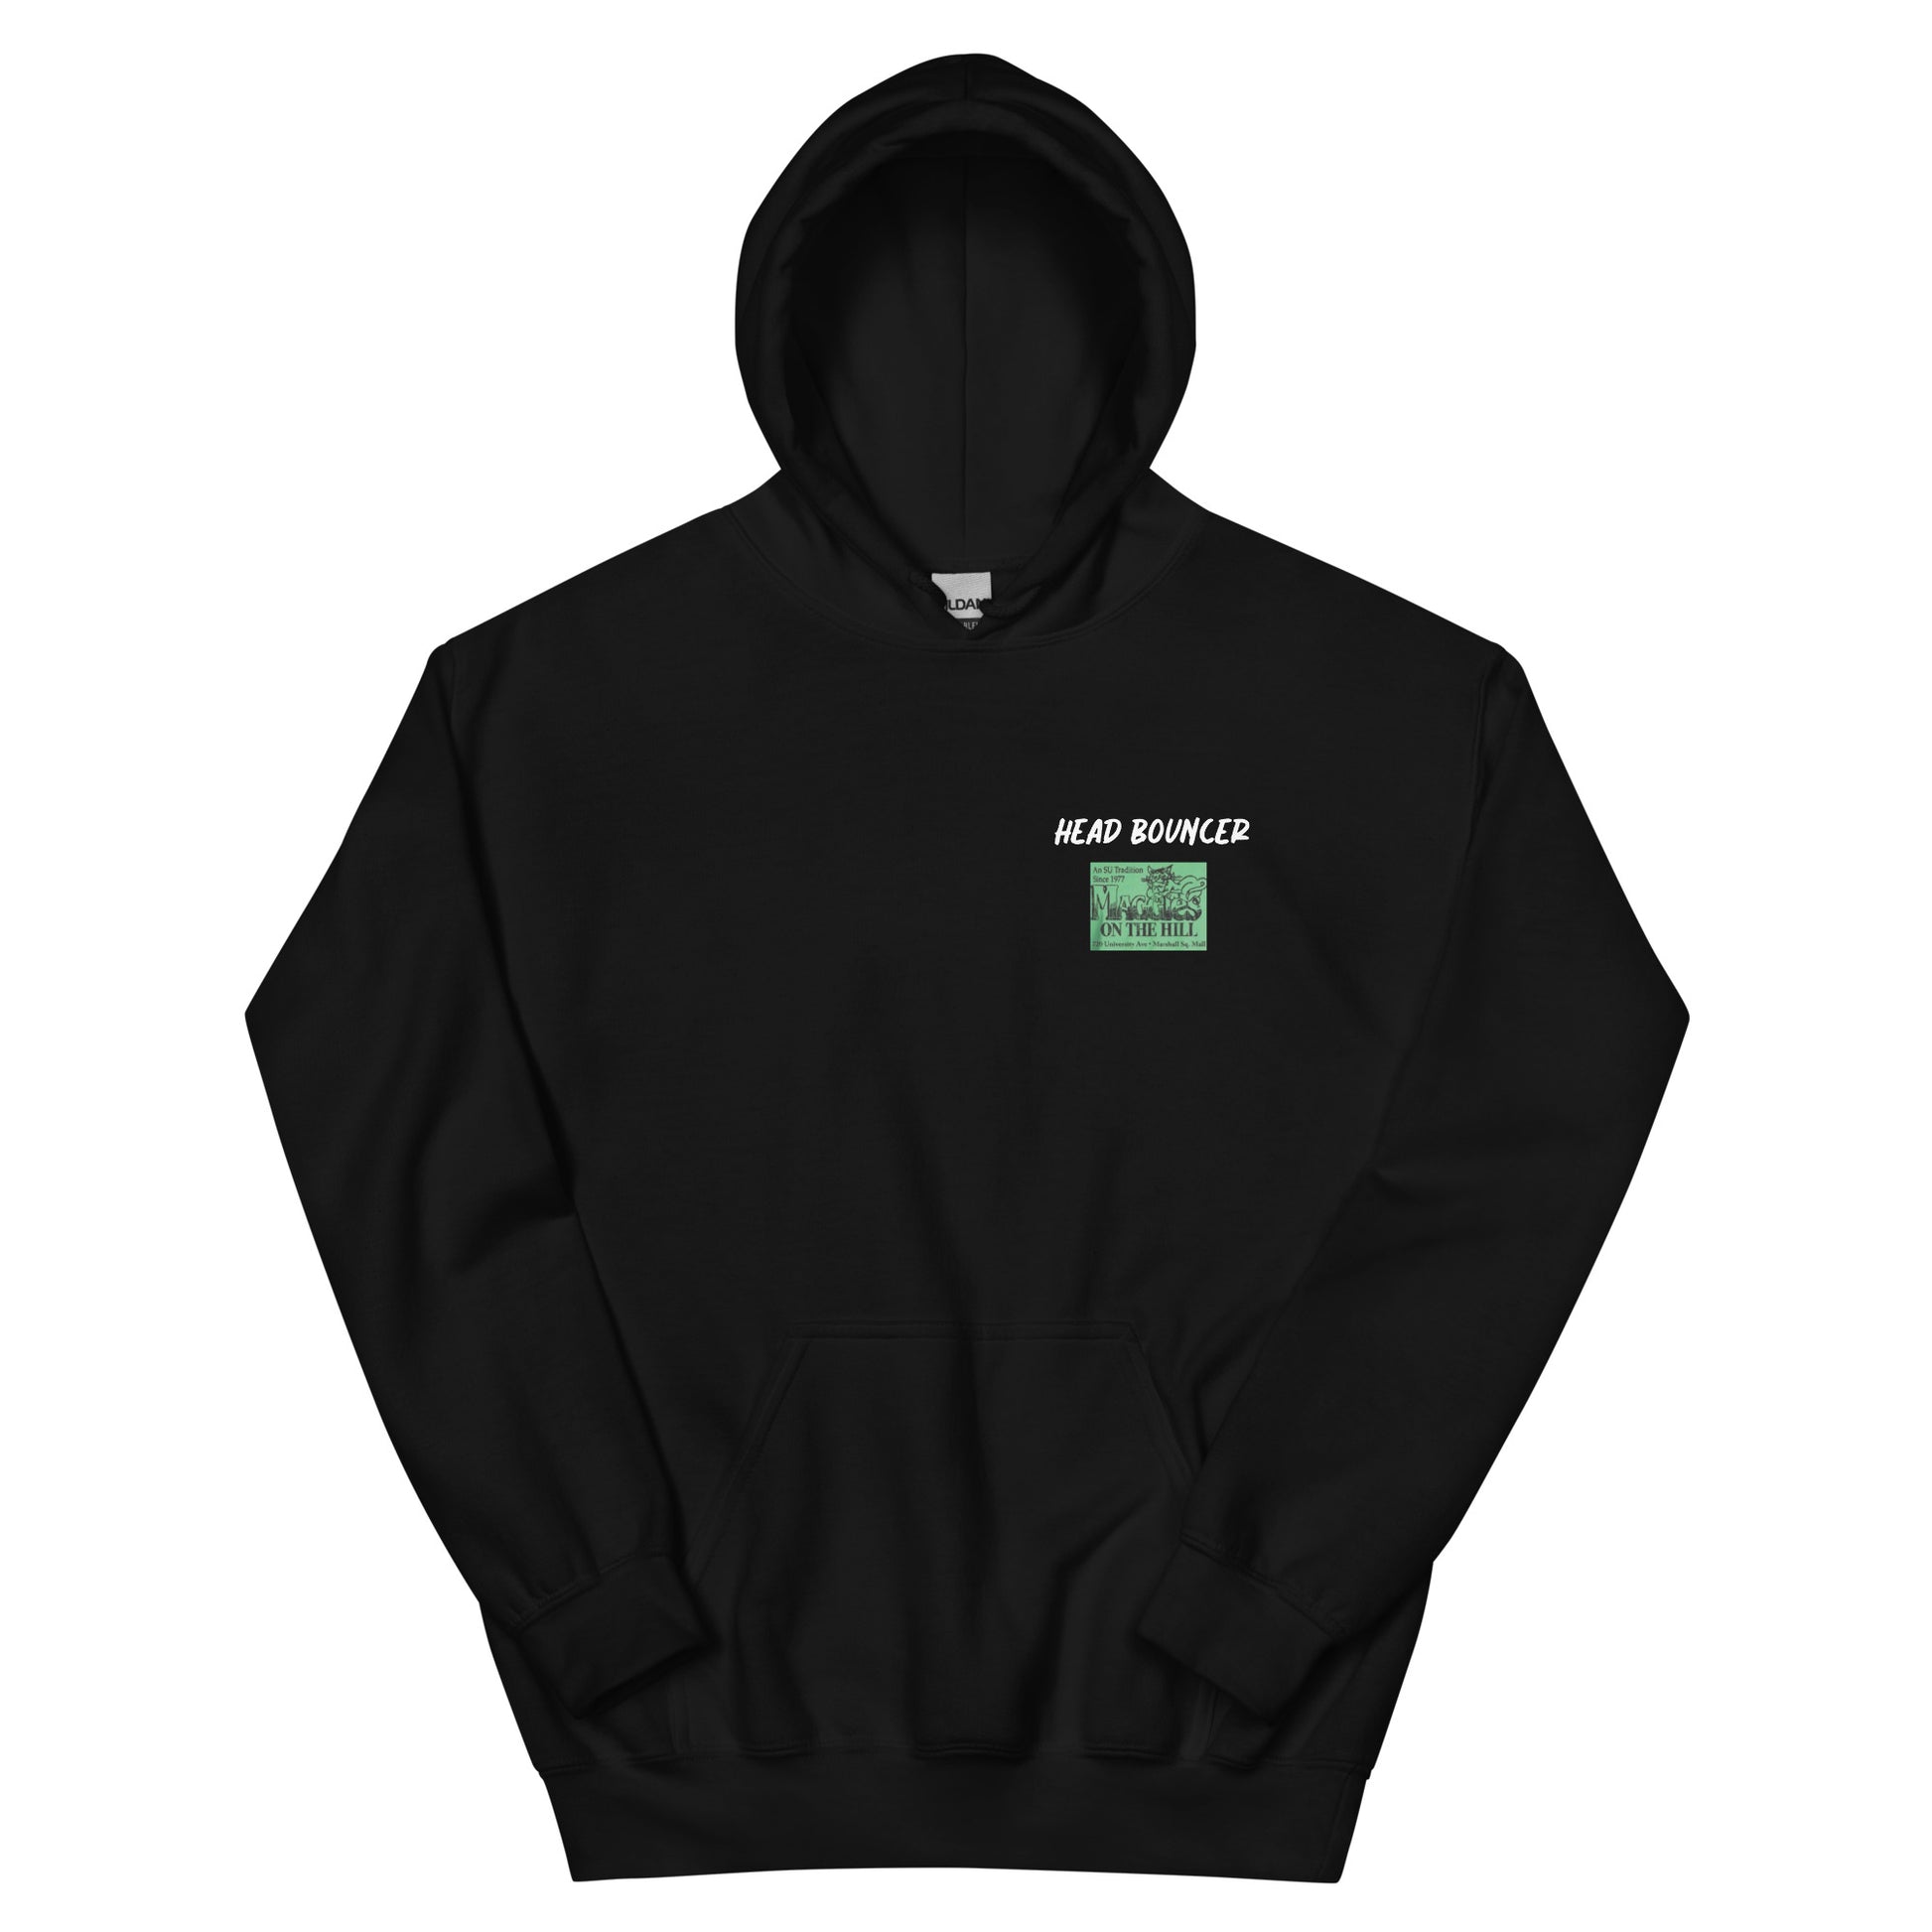 Best men's black sweatshirt graphic hoodie with warm pouch